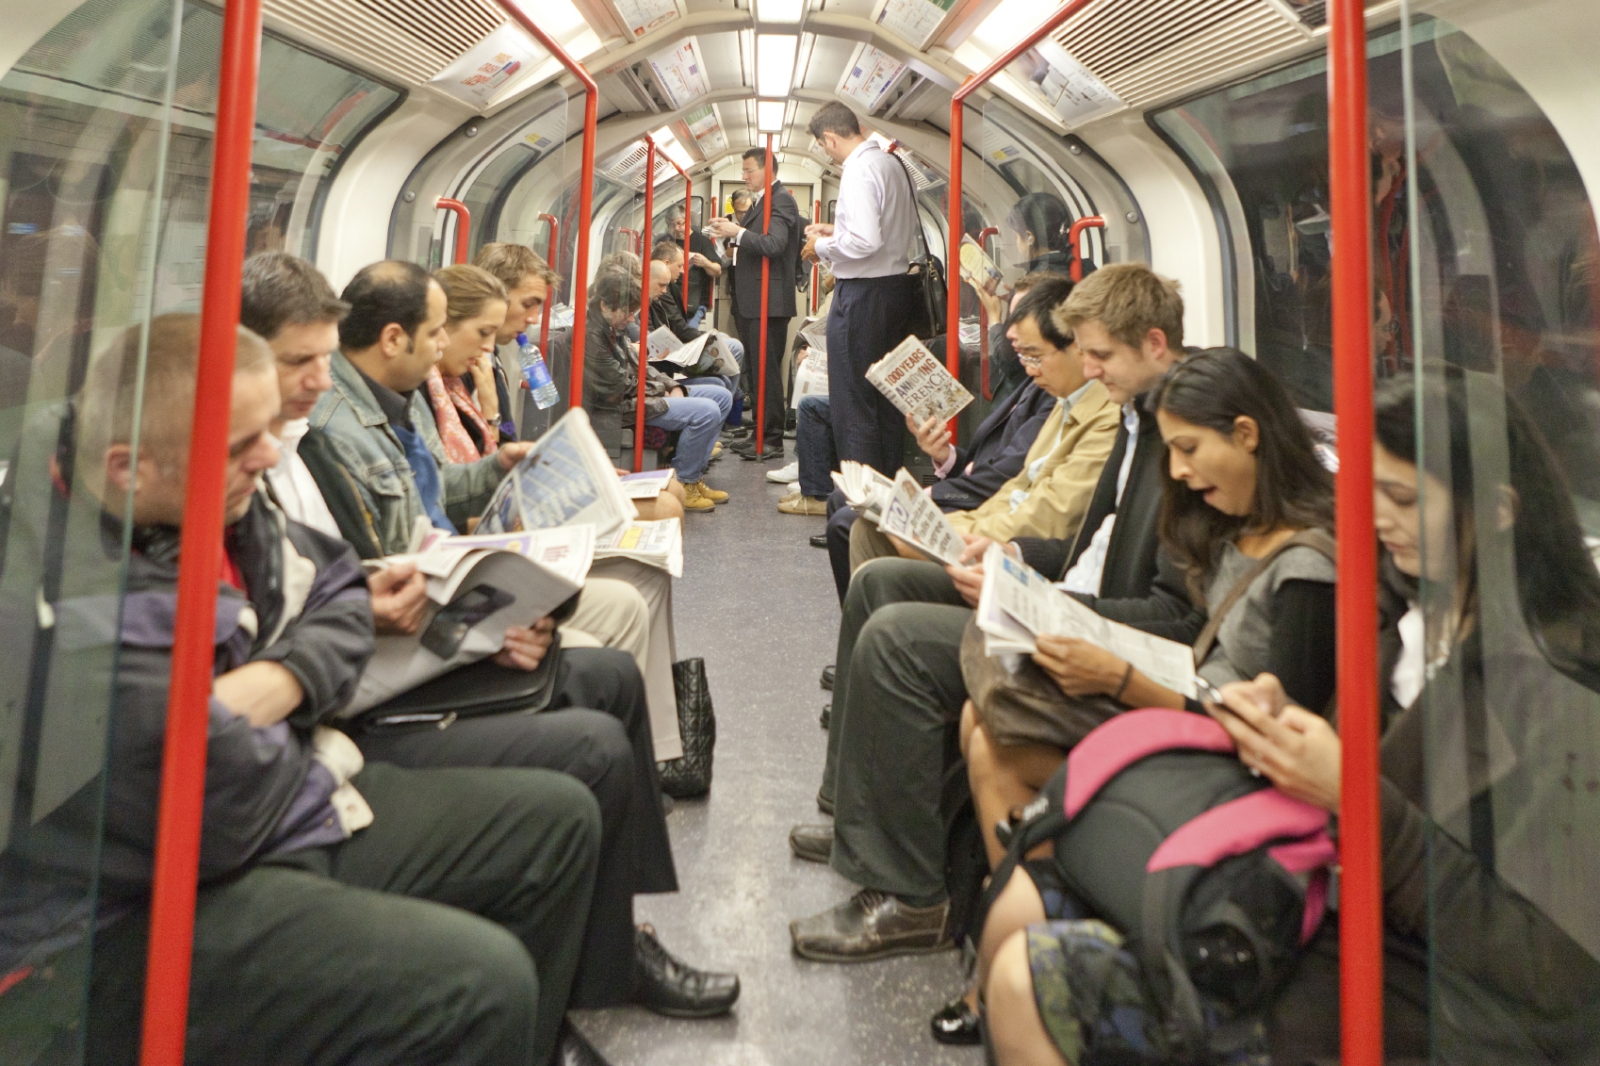 Tube chat London panics as badges urge commuter conversation picture